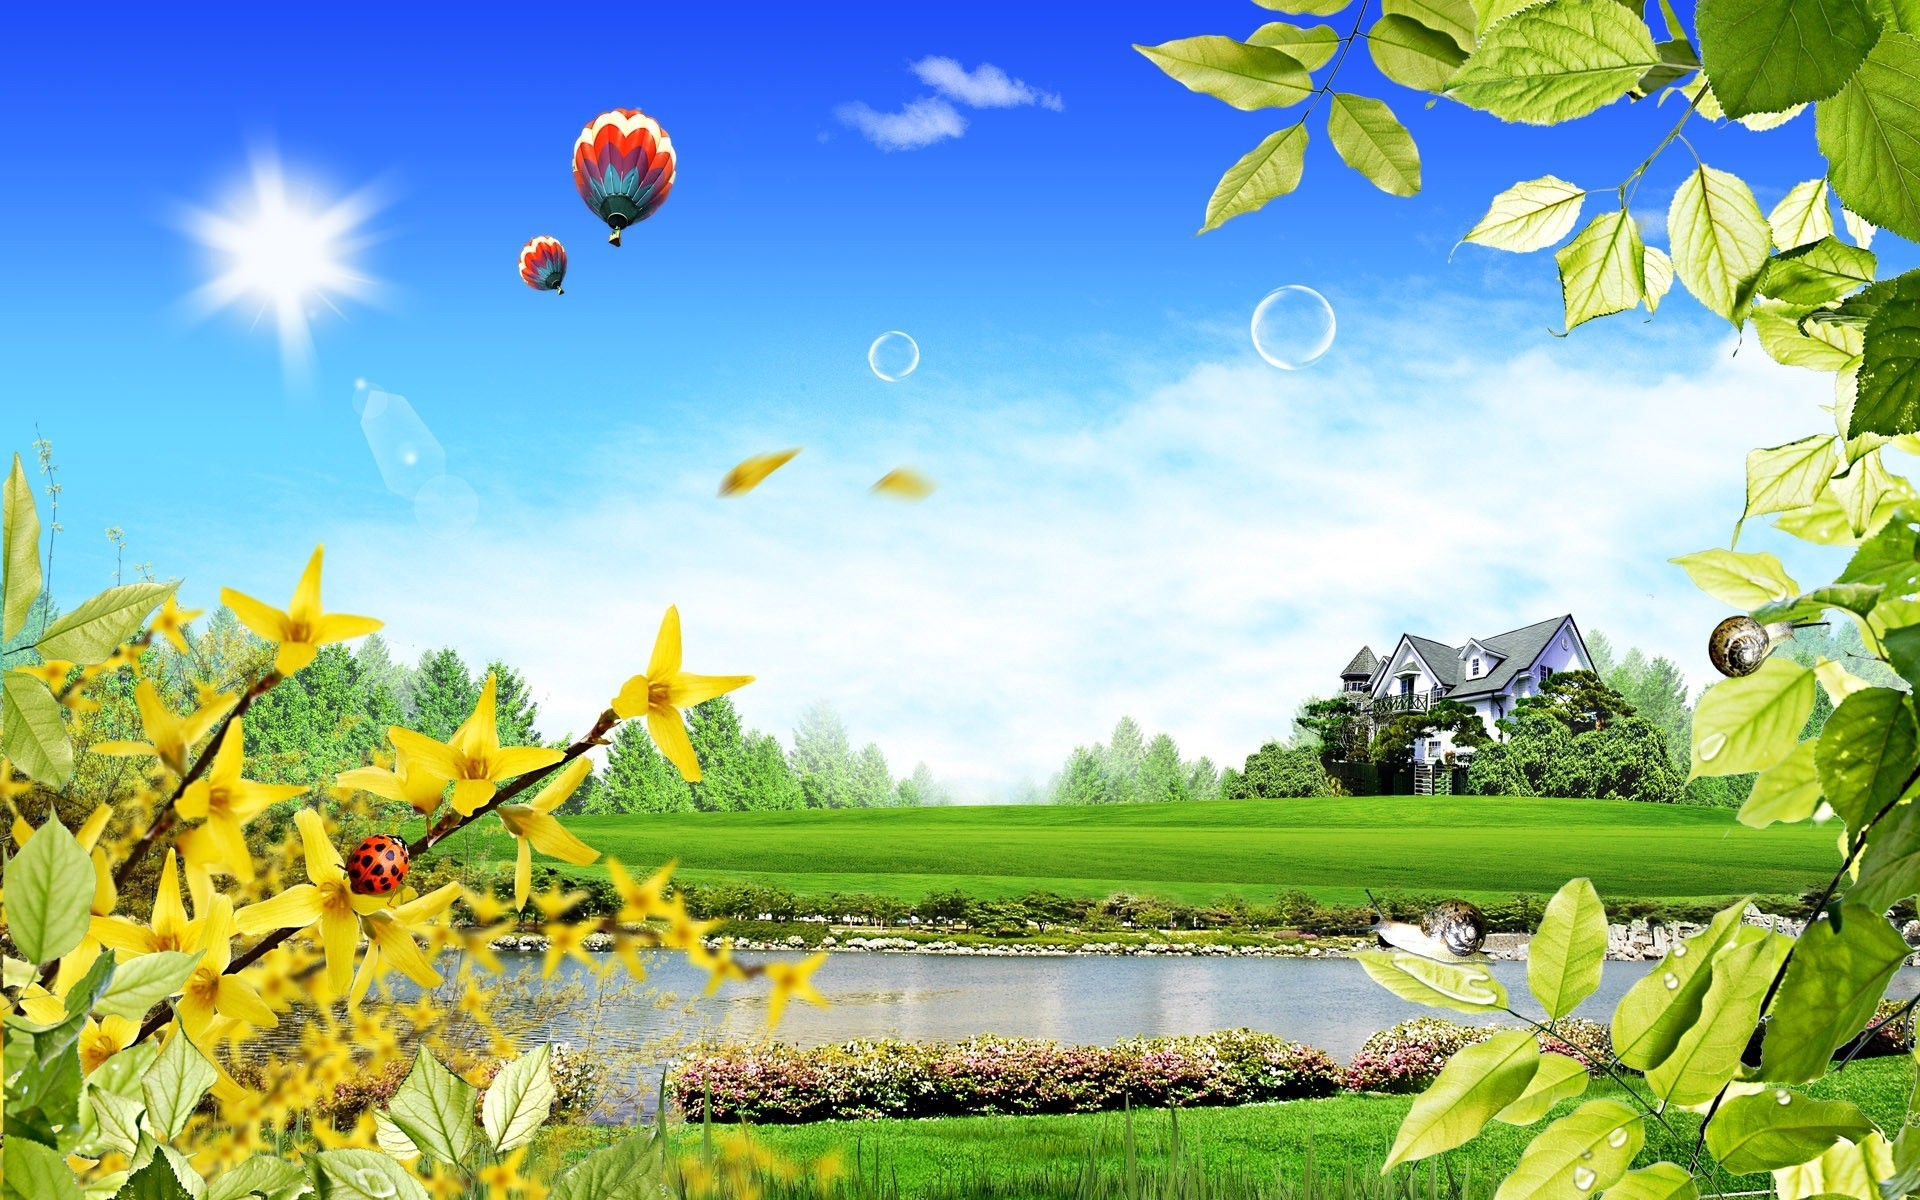 фэнтези природа лето лист небо трава флора дерево пейзаж сад сезон на открытом воздухе цветок поле красивые дом воздушный шар